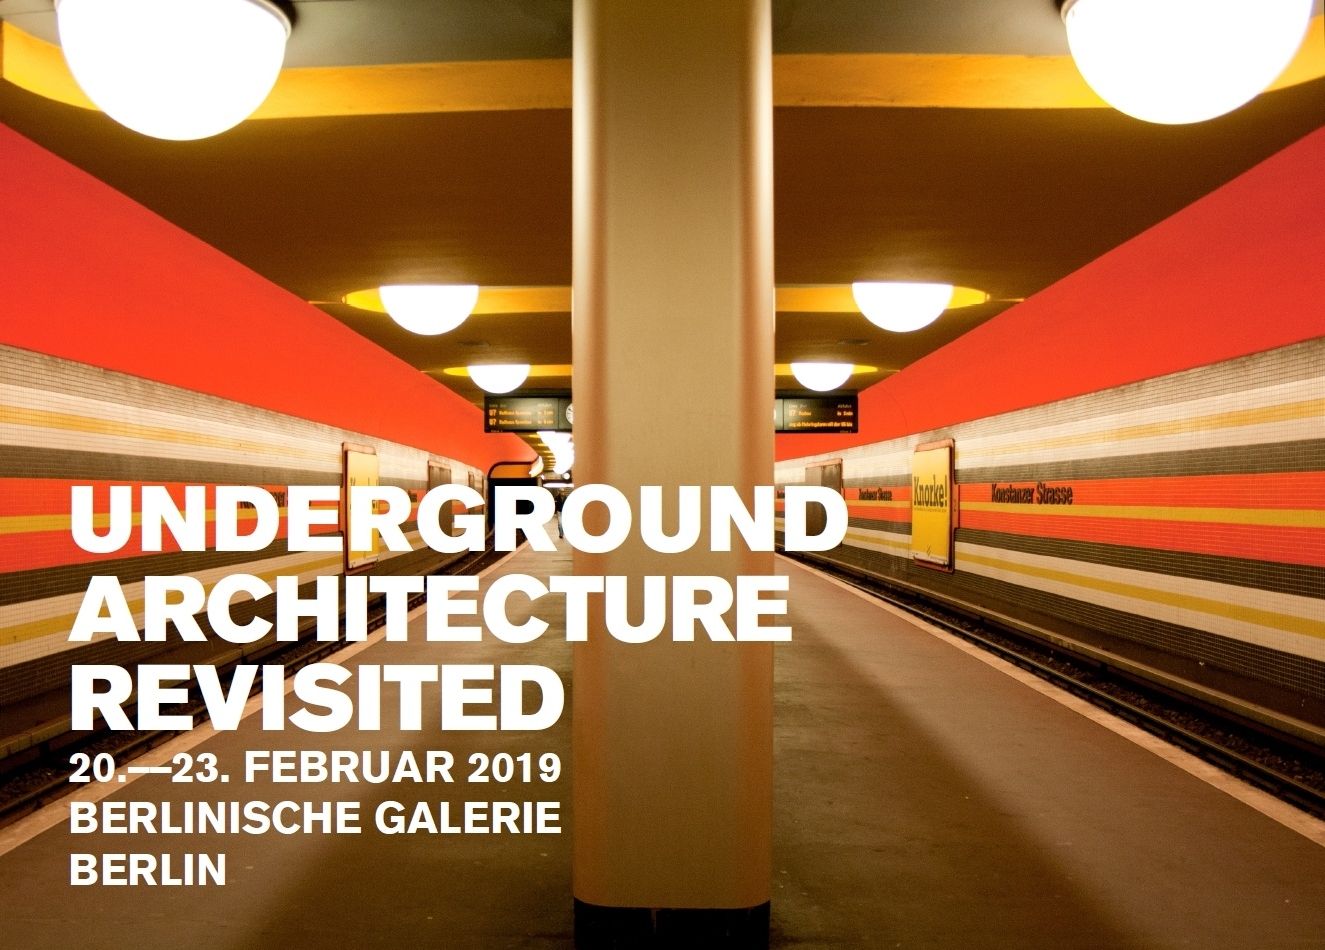 Einladung U-Bahn-Tagung 2019 "Underground Architecture Revisited"